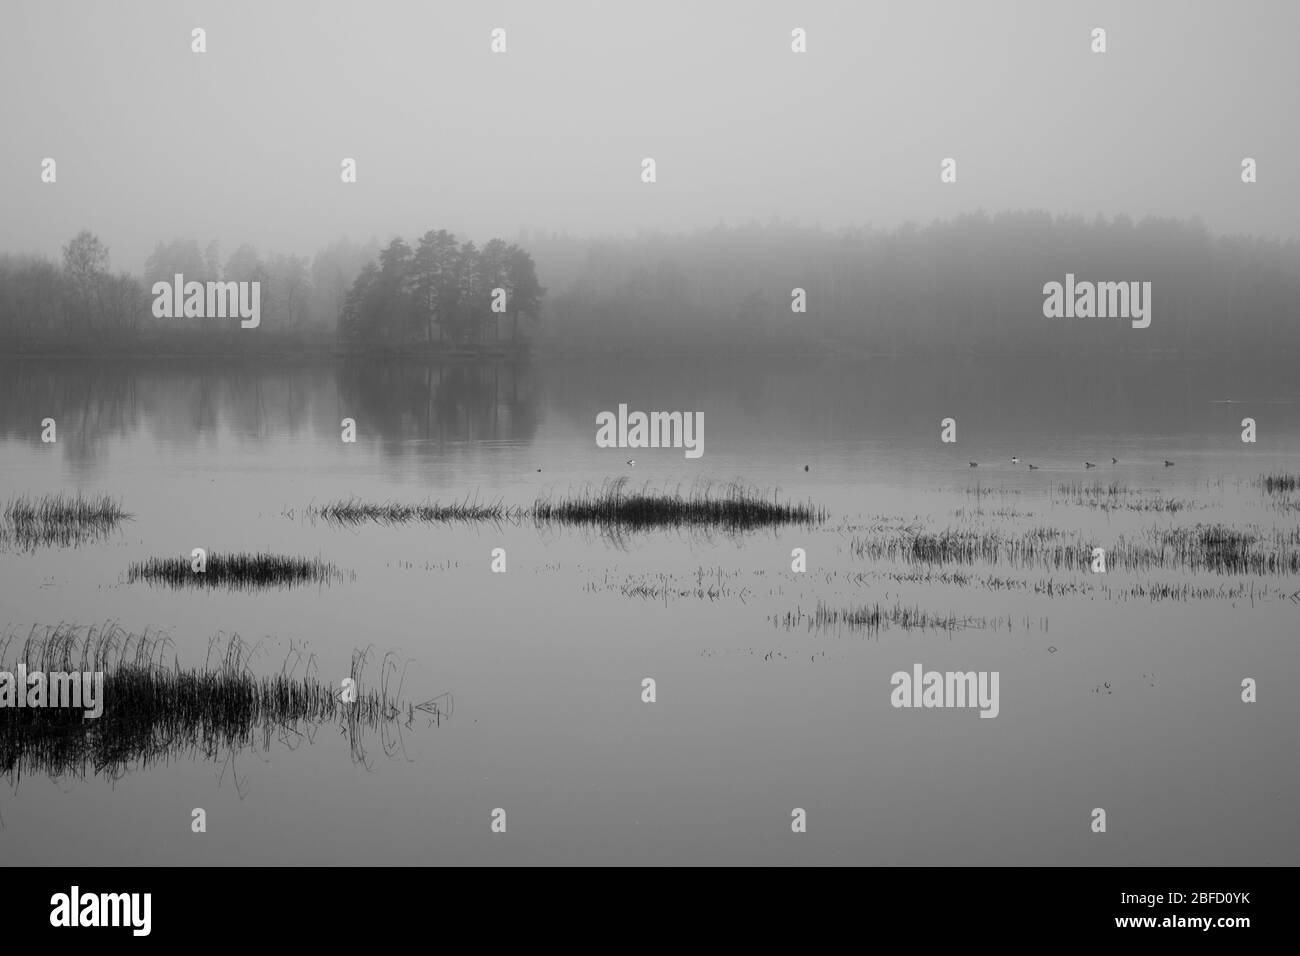 Eine schwarz-weiße Szene an einem Fluss an einem grauen nebligen Tag mit trockenem Schilf im Vordergrund und einem anderen Ufer, das im Nebel verschwindet Stockfoto